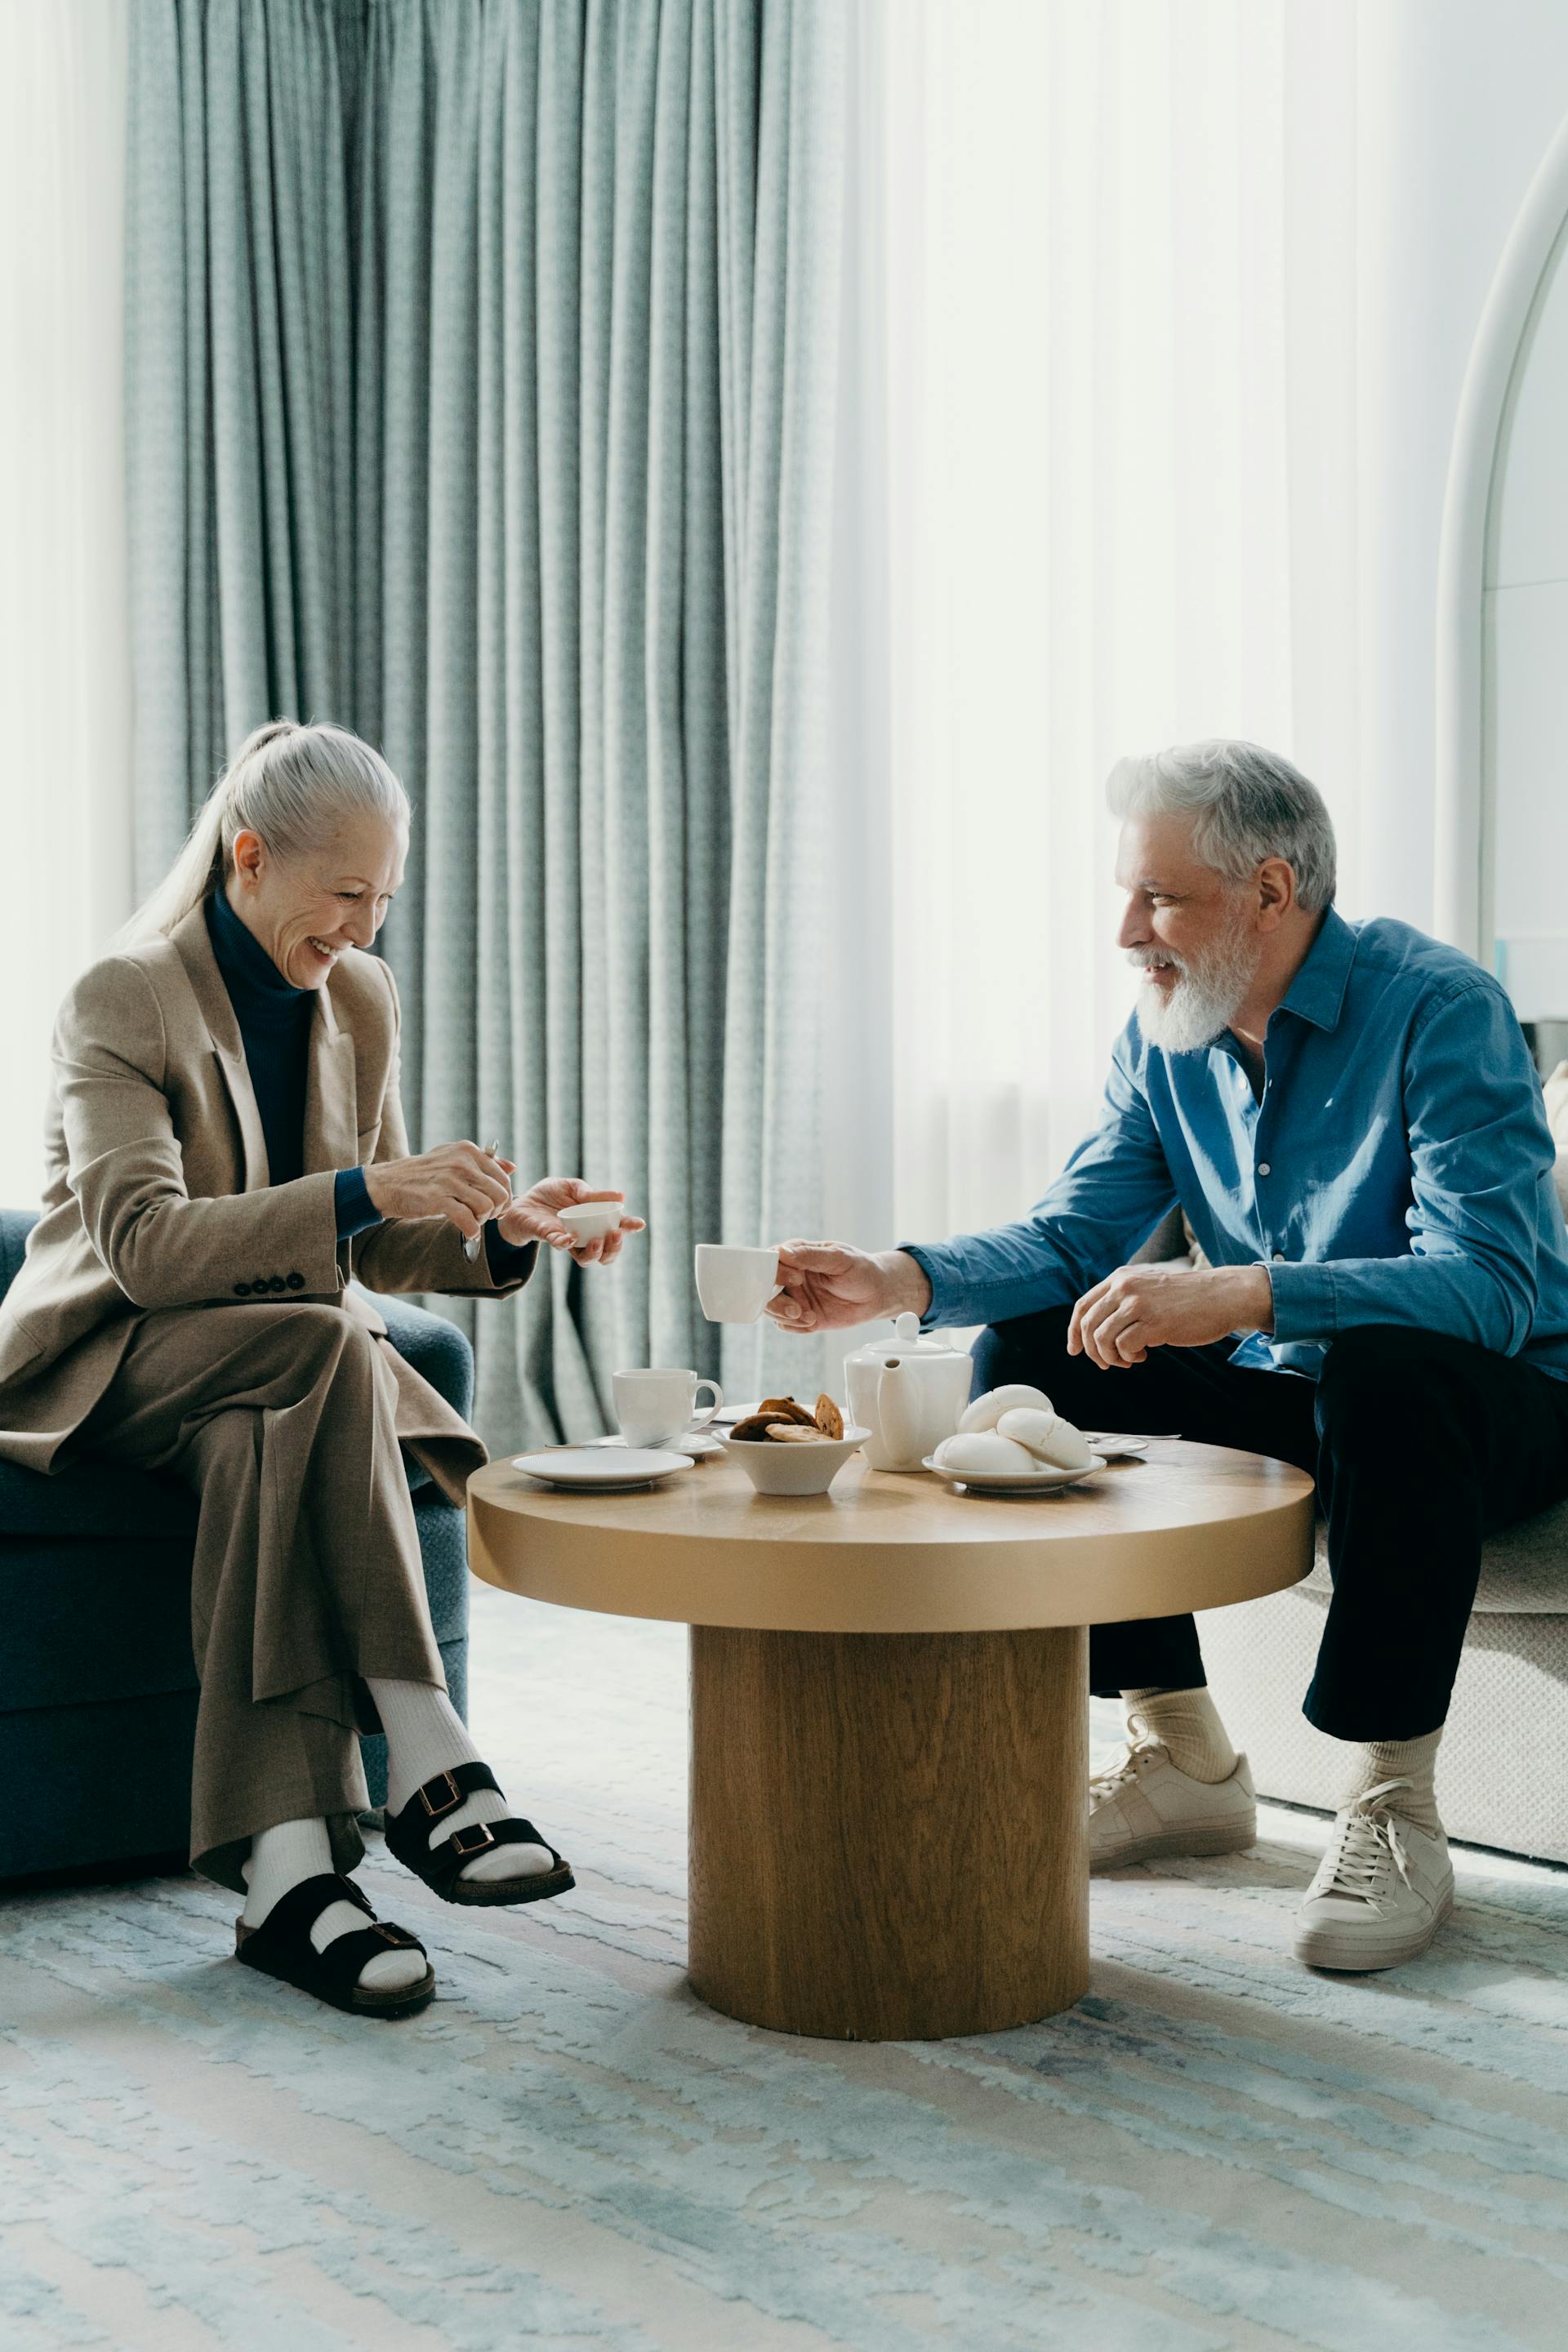 Ein älteres Paar, das Zeit miteinander verbringt | Quelle: Pexels